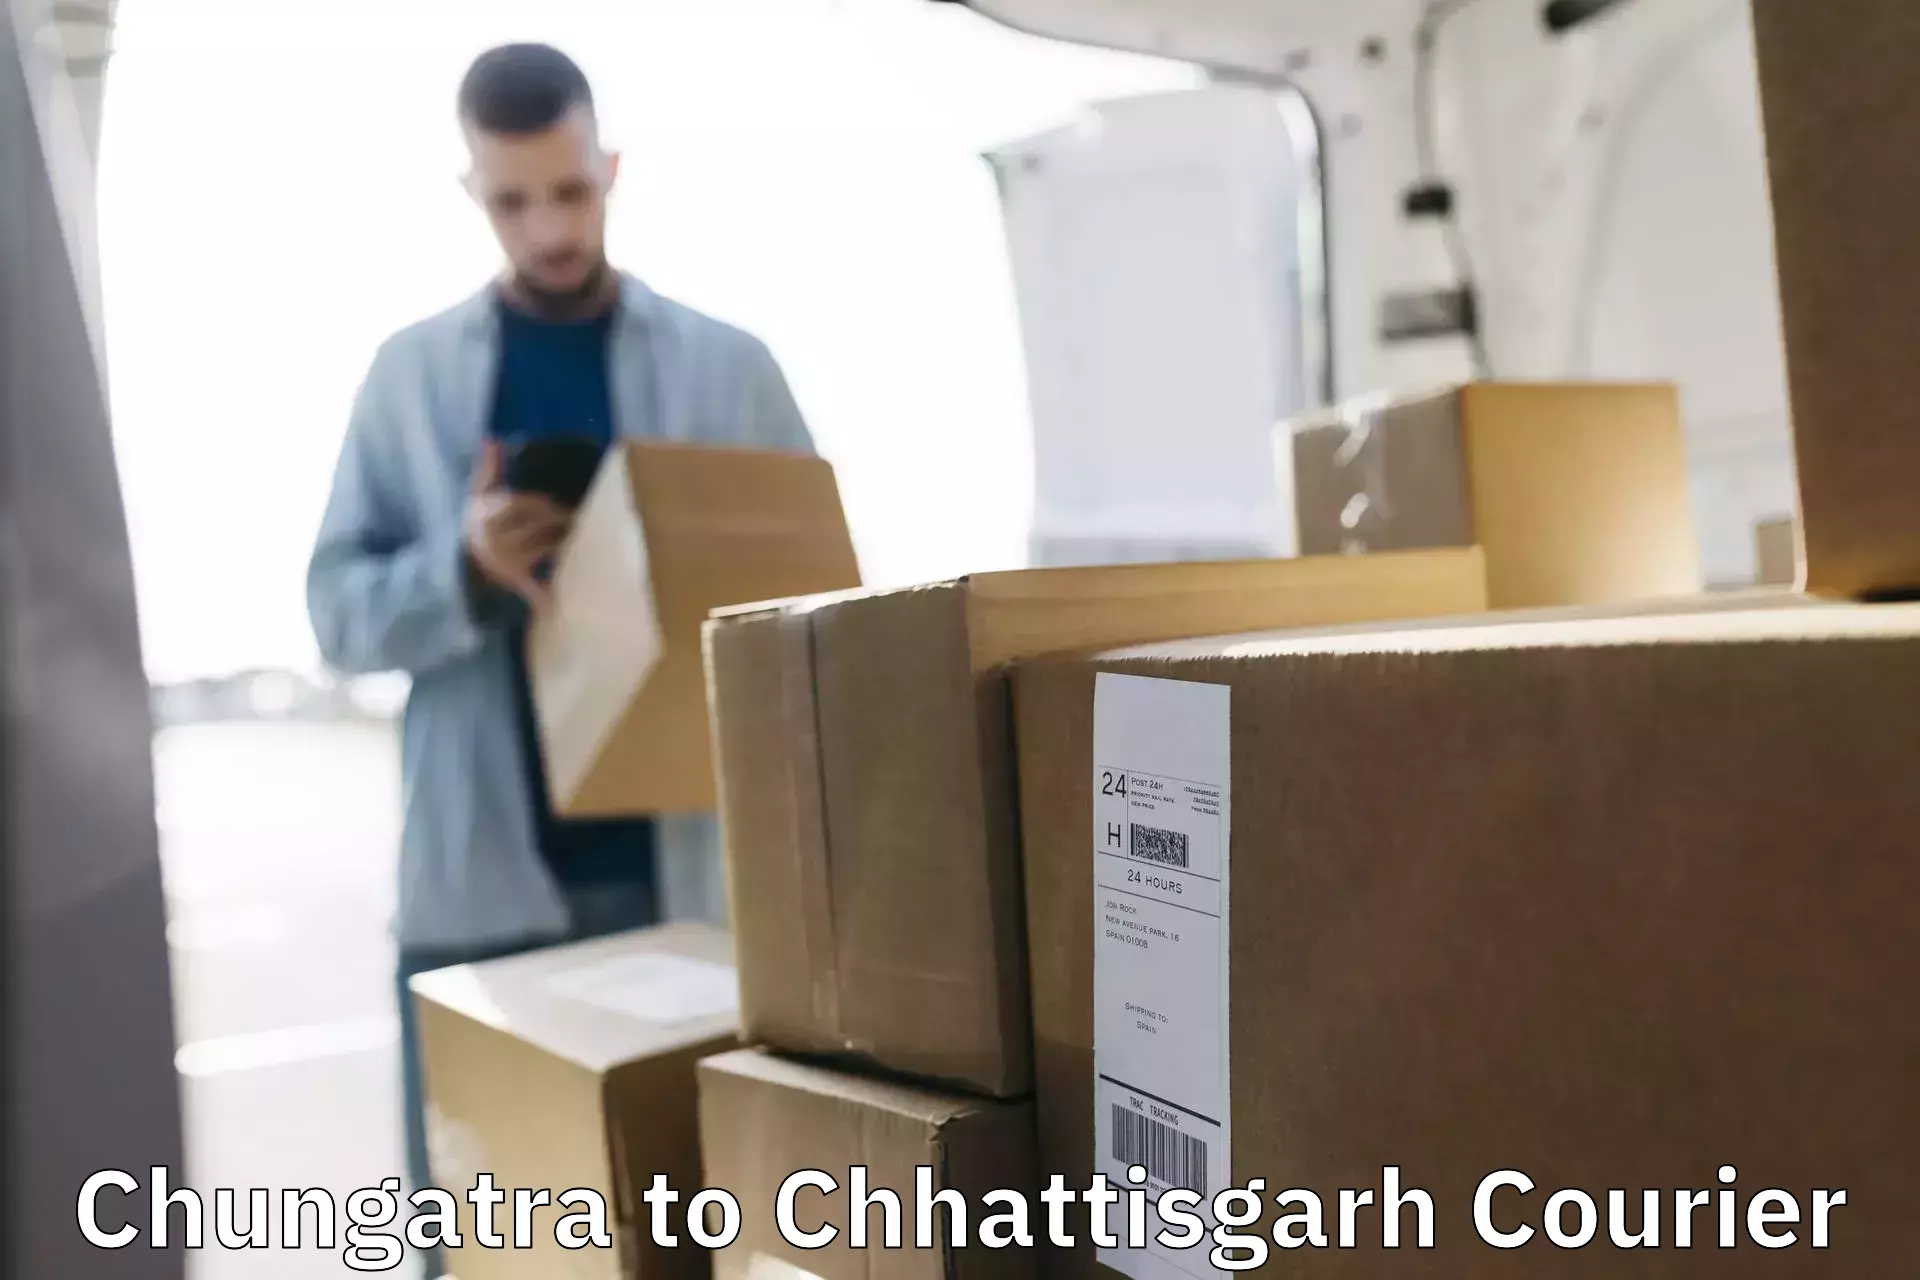 Logistics service provider Chungatra to Chhattisgarh